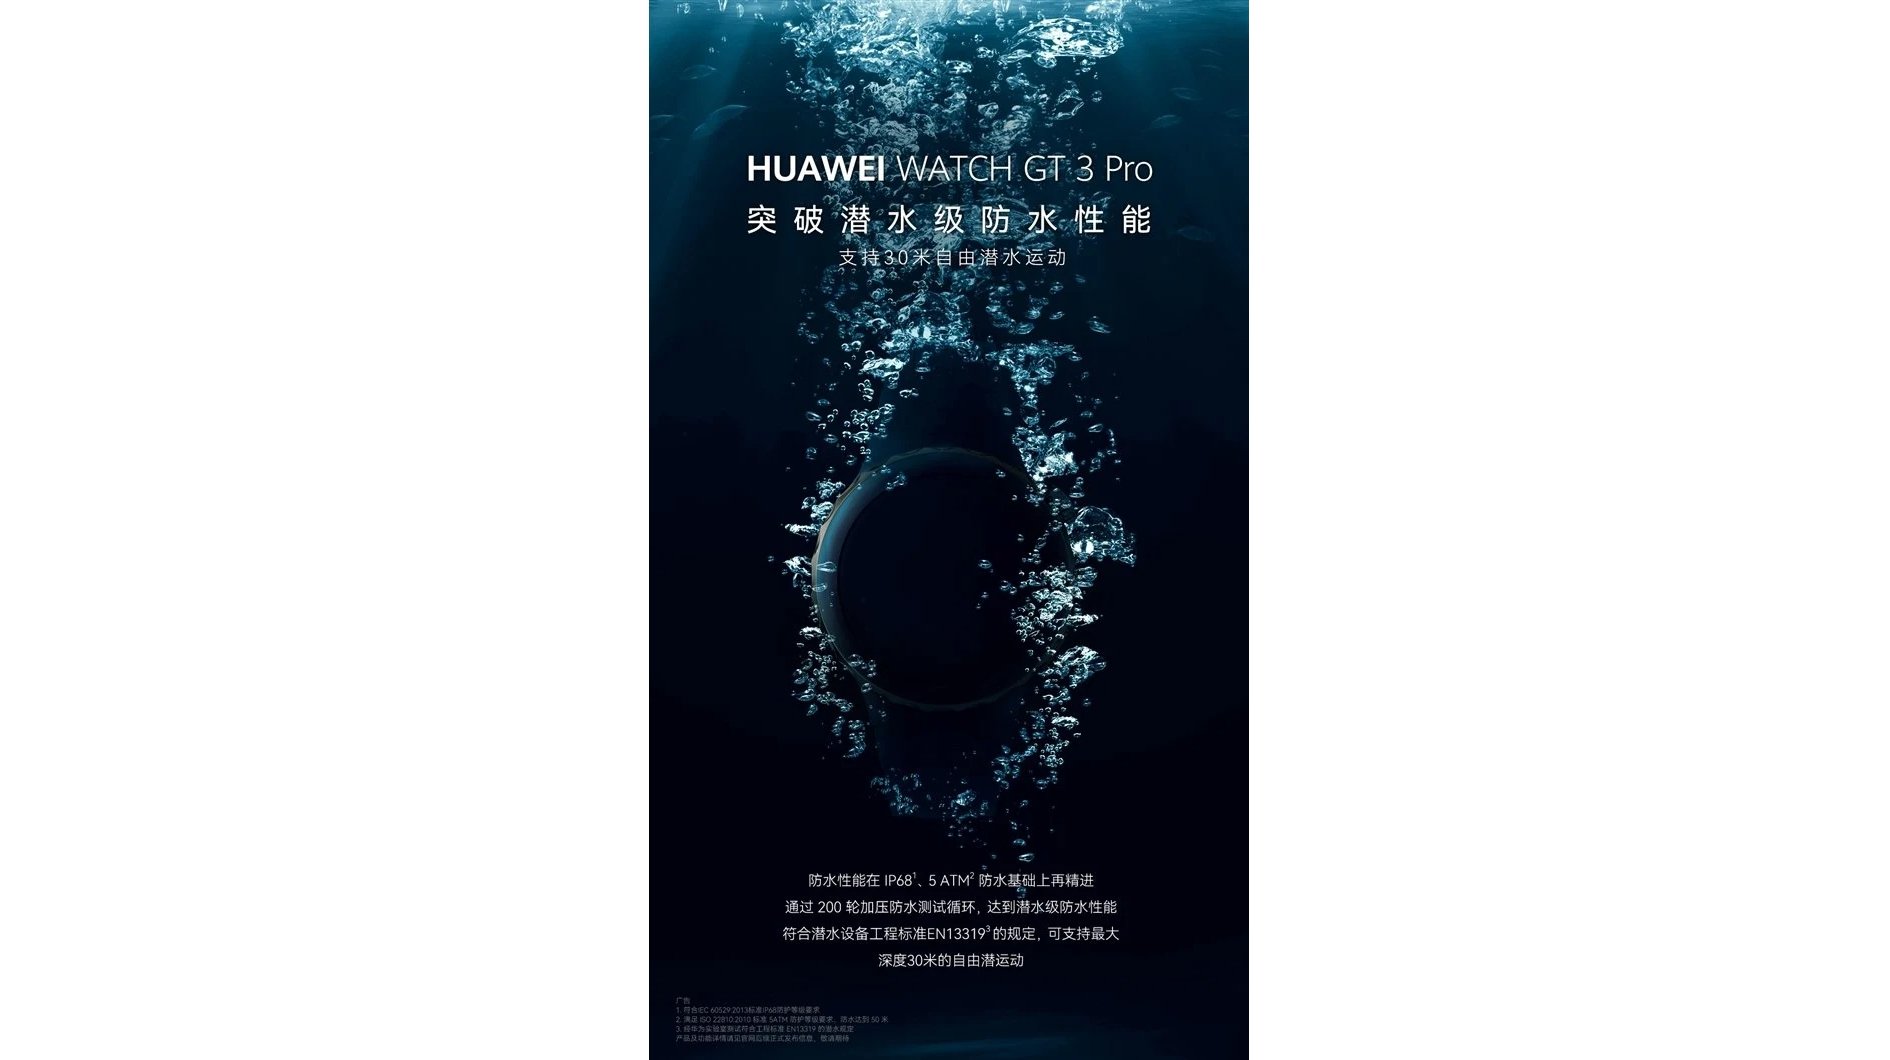 Изображение-тизер, демонстрирующее водонепроницаемость Huawei Watch GT 3 Pro.